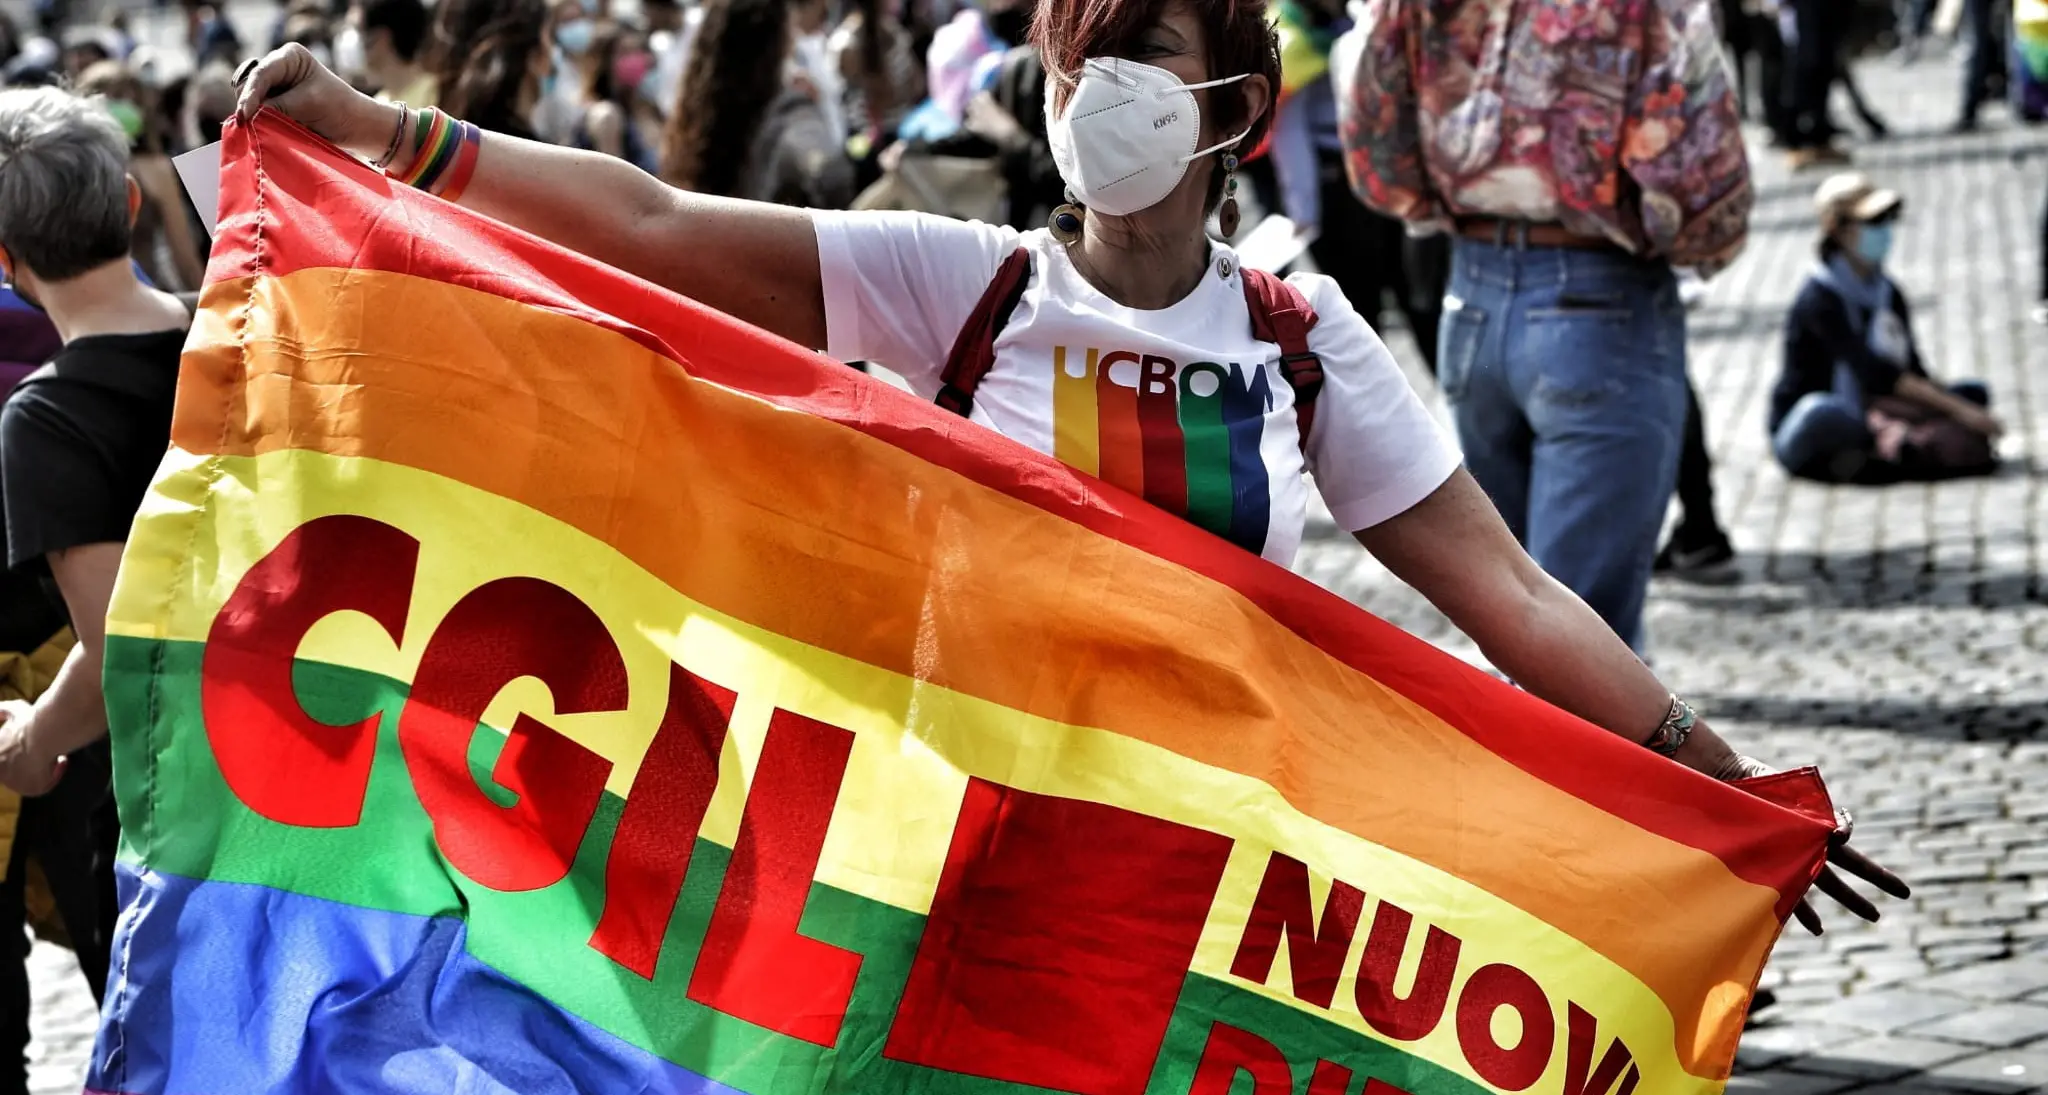 Diritti: Gallittu, no ad attacchi a comunità LGBTQIA+, moltiplichiamo impegno per inclusione